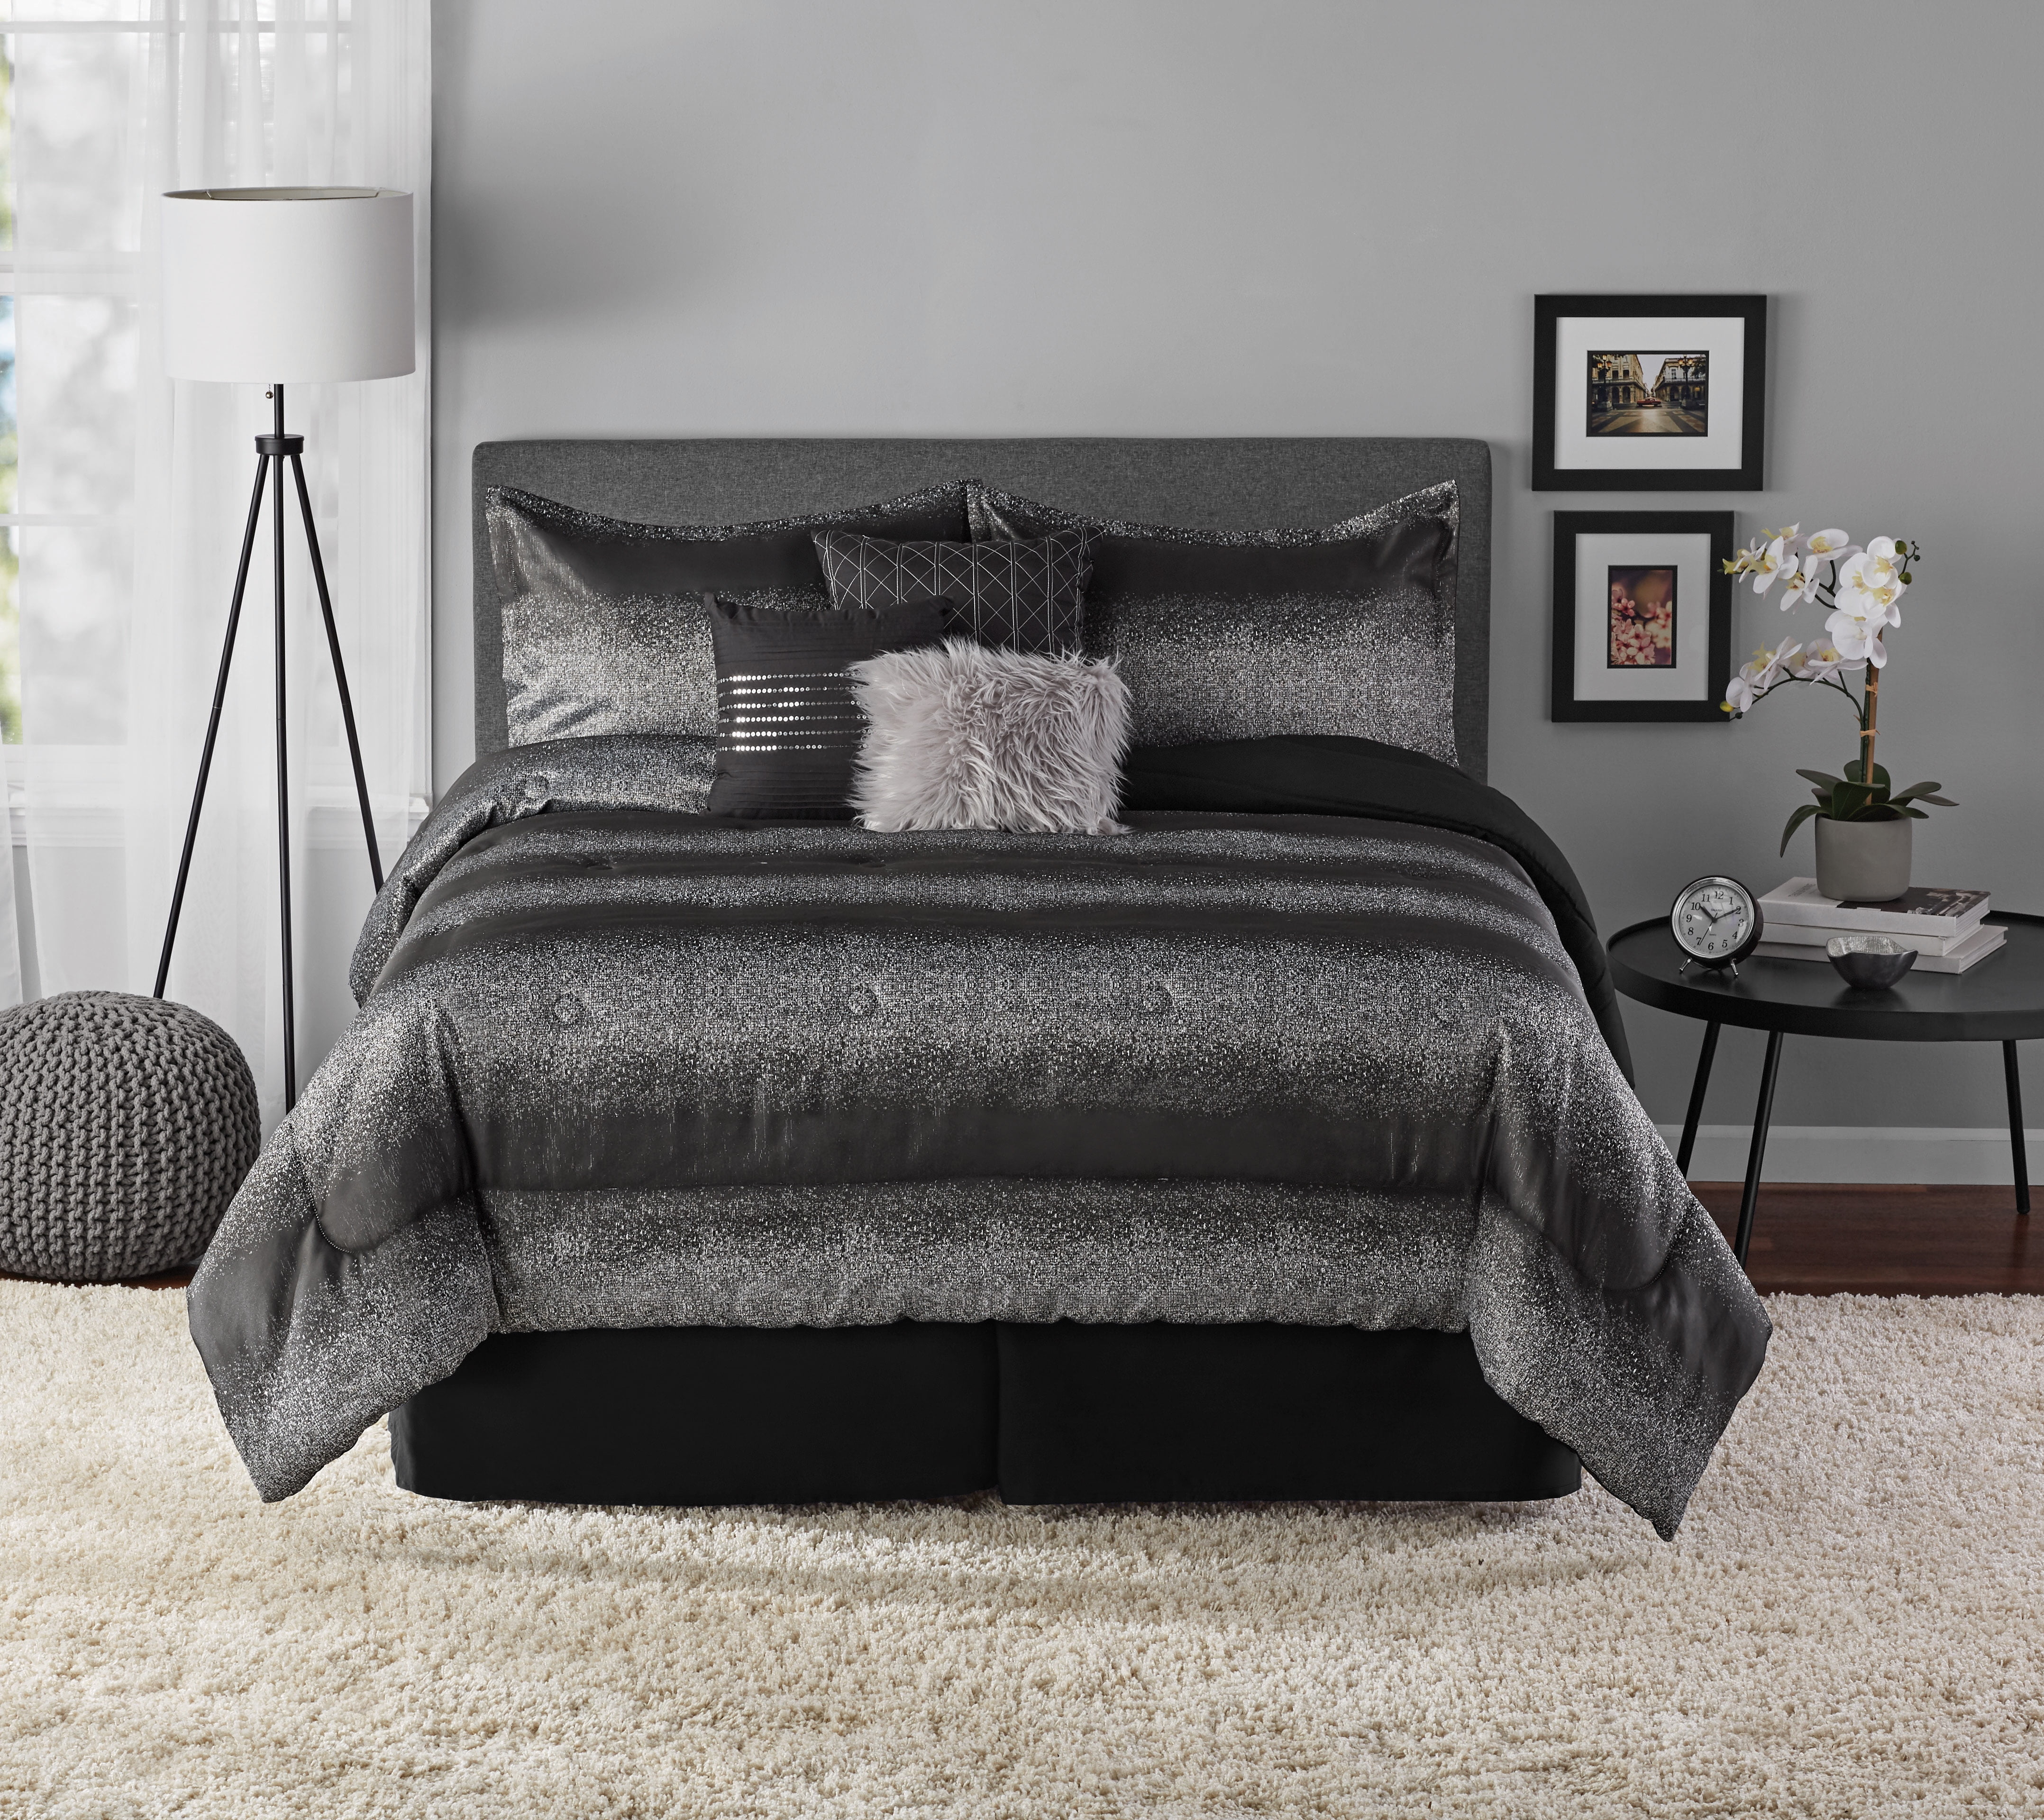 Details about   7 Piece Ombre Metallic Stripe Comforter Set Full Queen Black & Silver Bedroom 